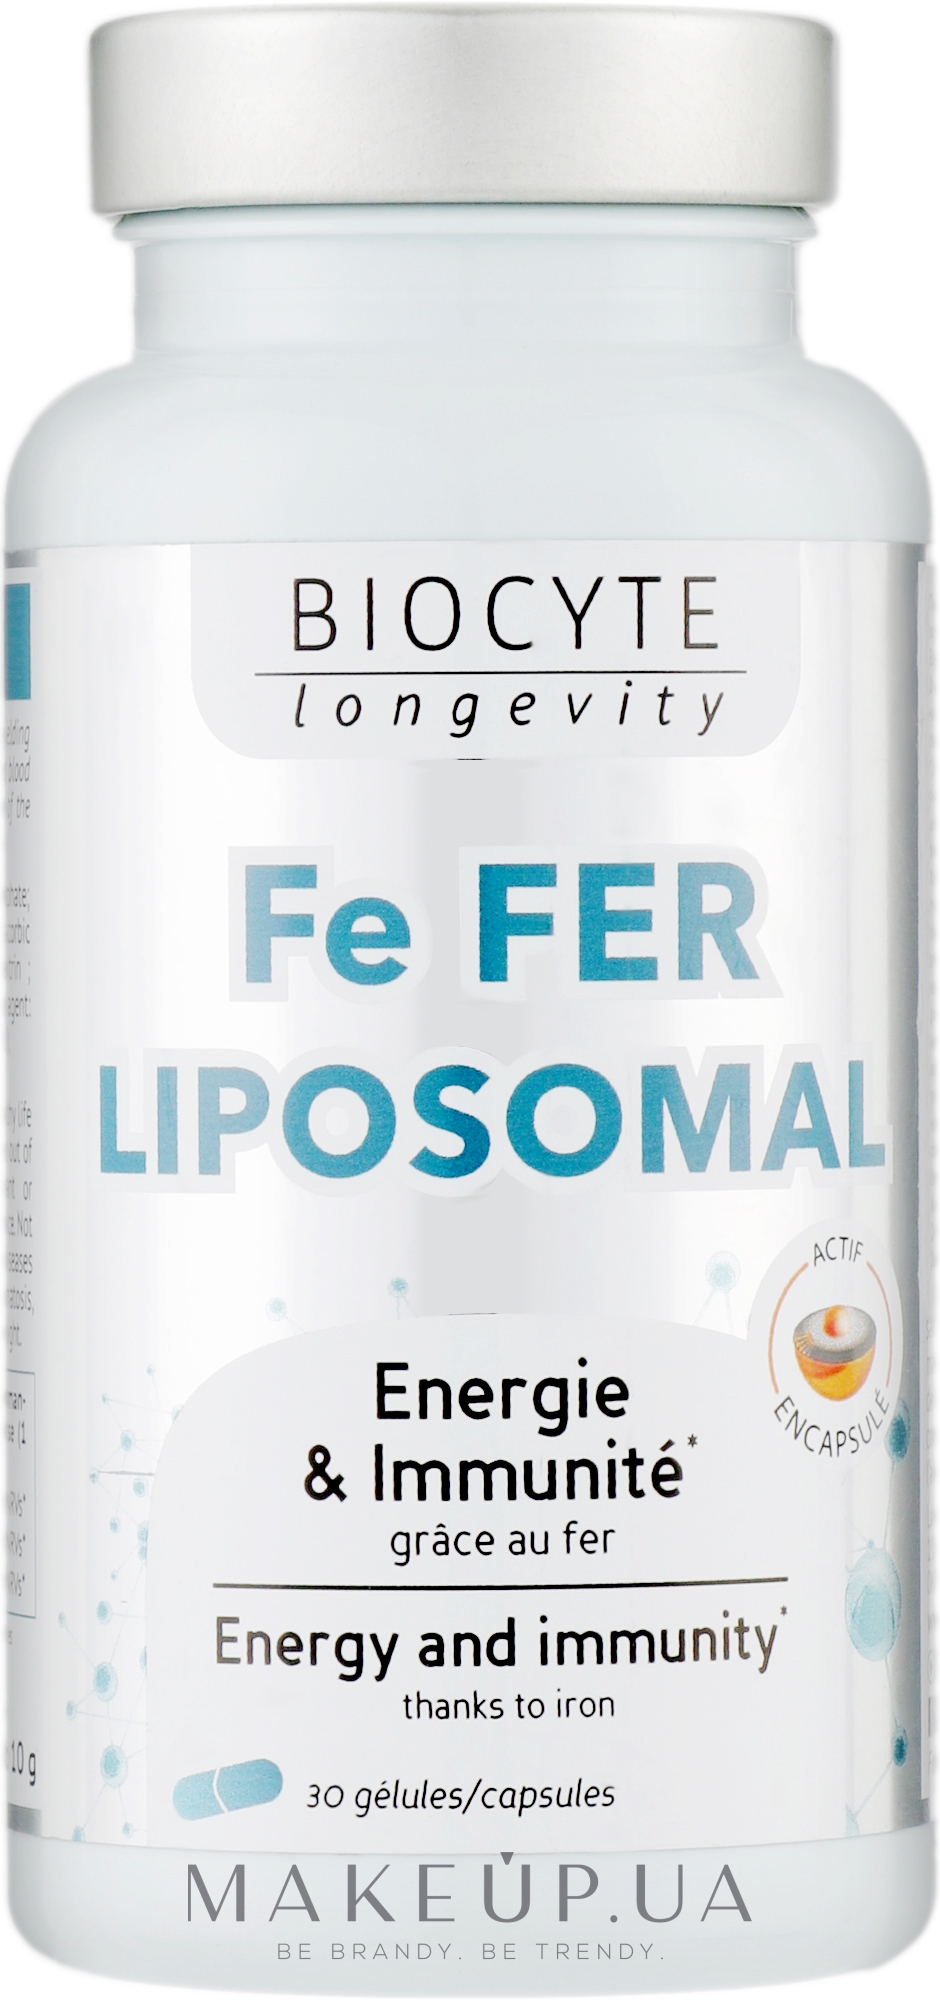 Biocytе Залізо + Вітаміни C та B12: Формування еритроцитів  - Biocyte Fe Fer Liposomal — фото 30шт